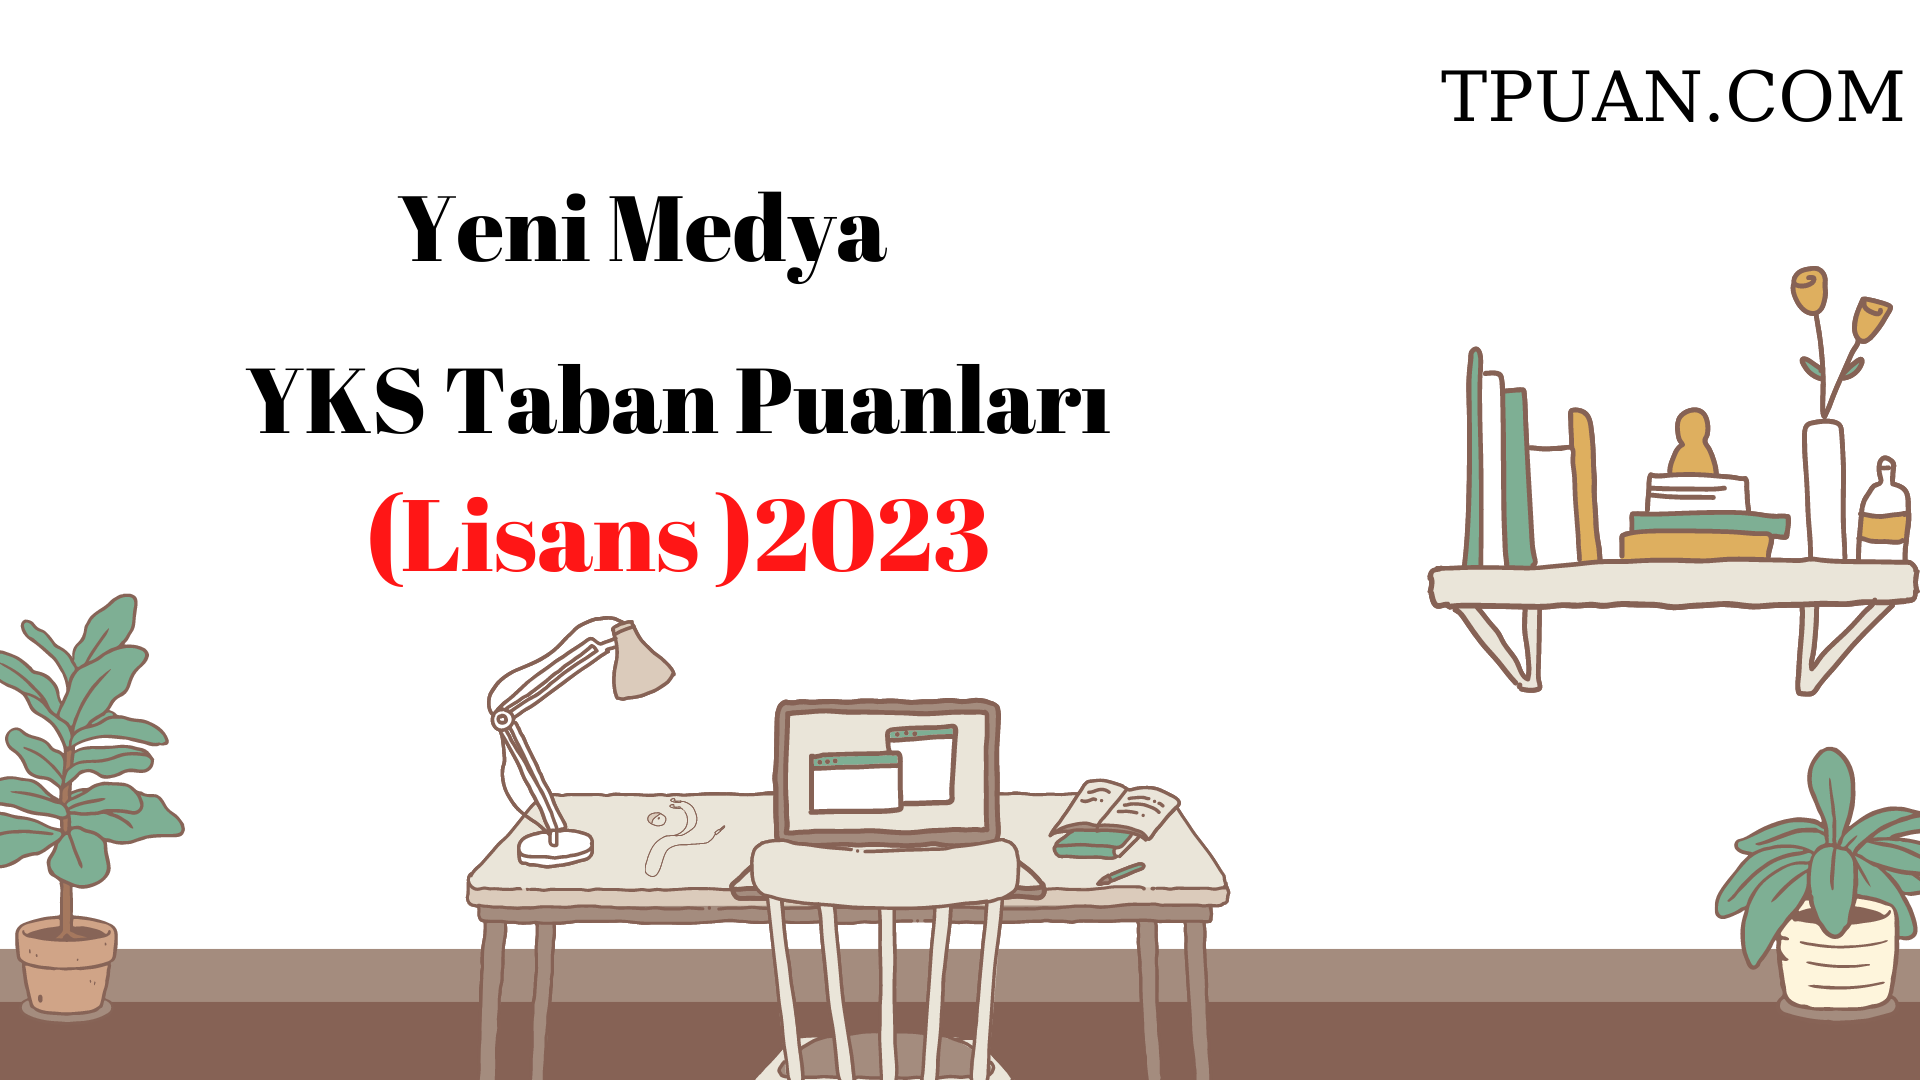  Yeni Medya Bölümü YKS Taban Puanları (4 Yıllık) 2023